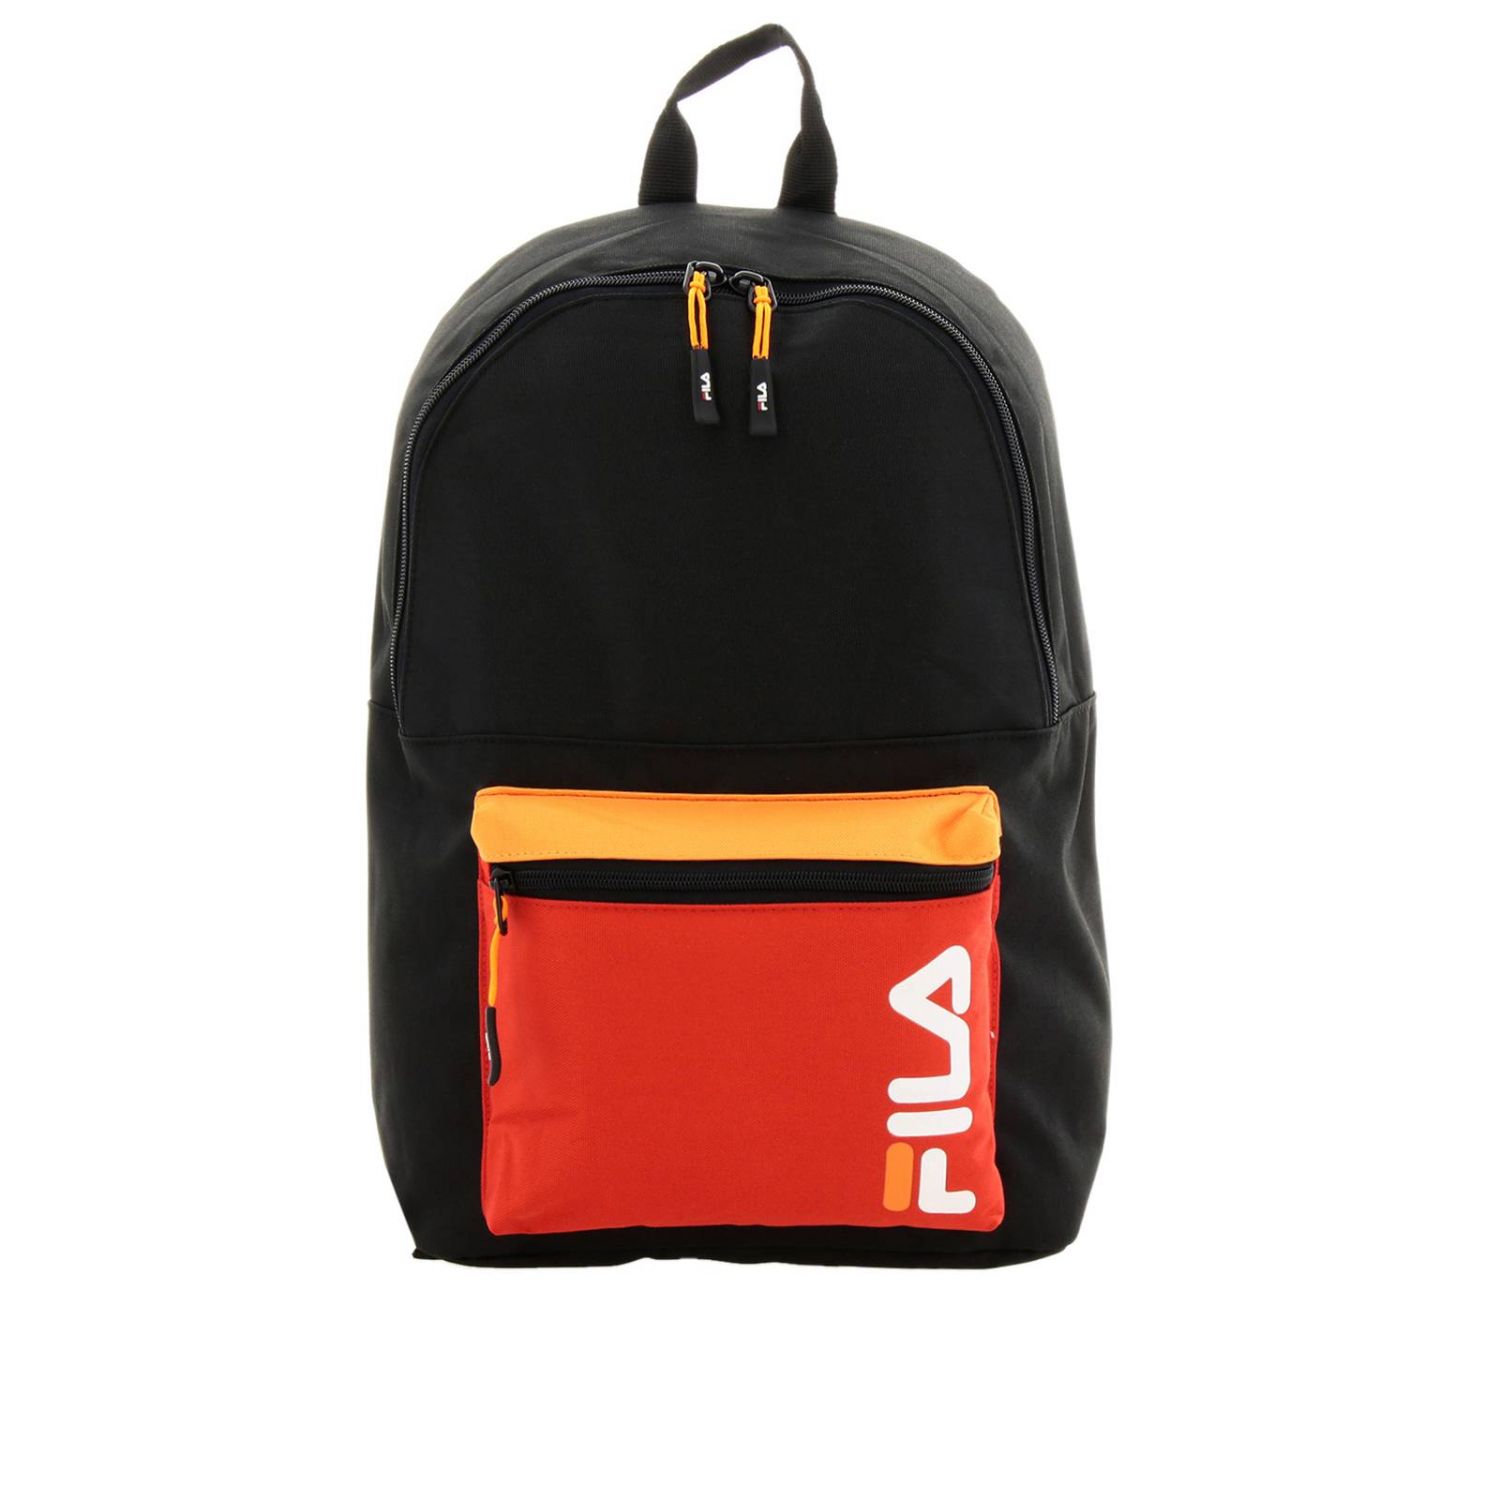 fila backpack orange